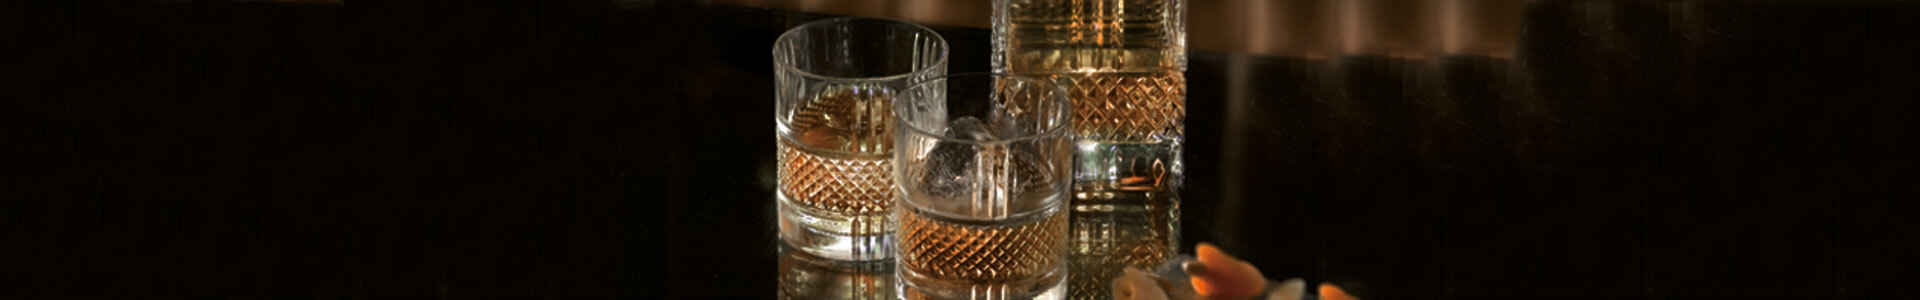 Whiskykaraffe und Gläser aus der Serie Brillante von RCR stehen auf einem Tisch.